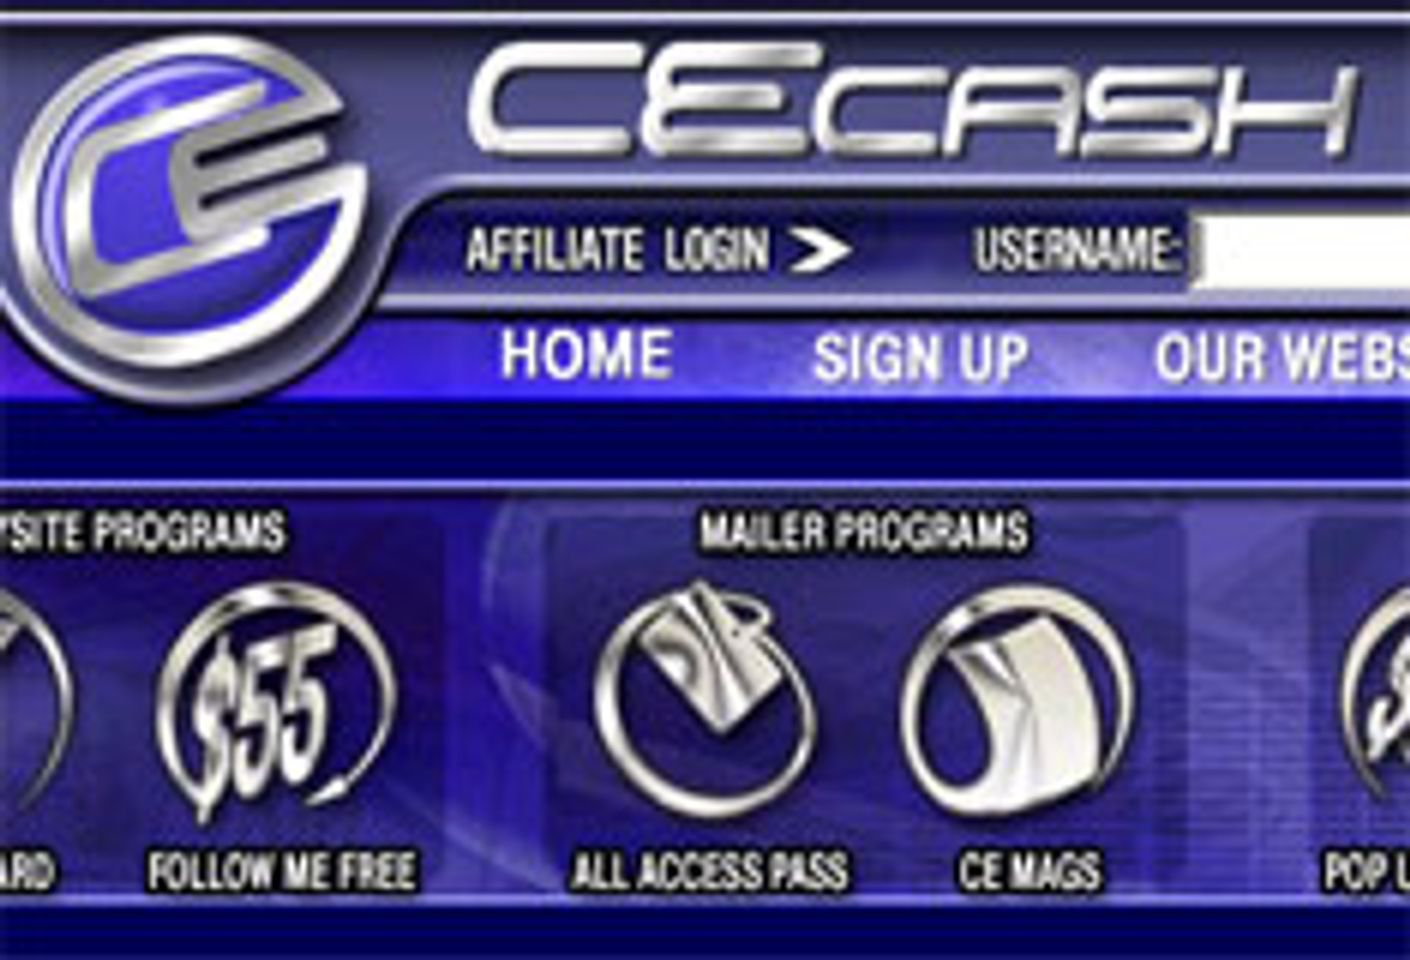 CE Cash Closes Homegrown Affiliate Program, Countersues Parent Co. - AVN Online